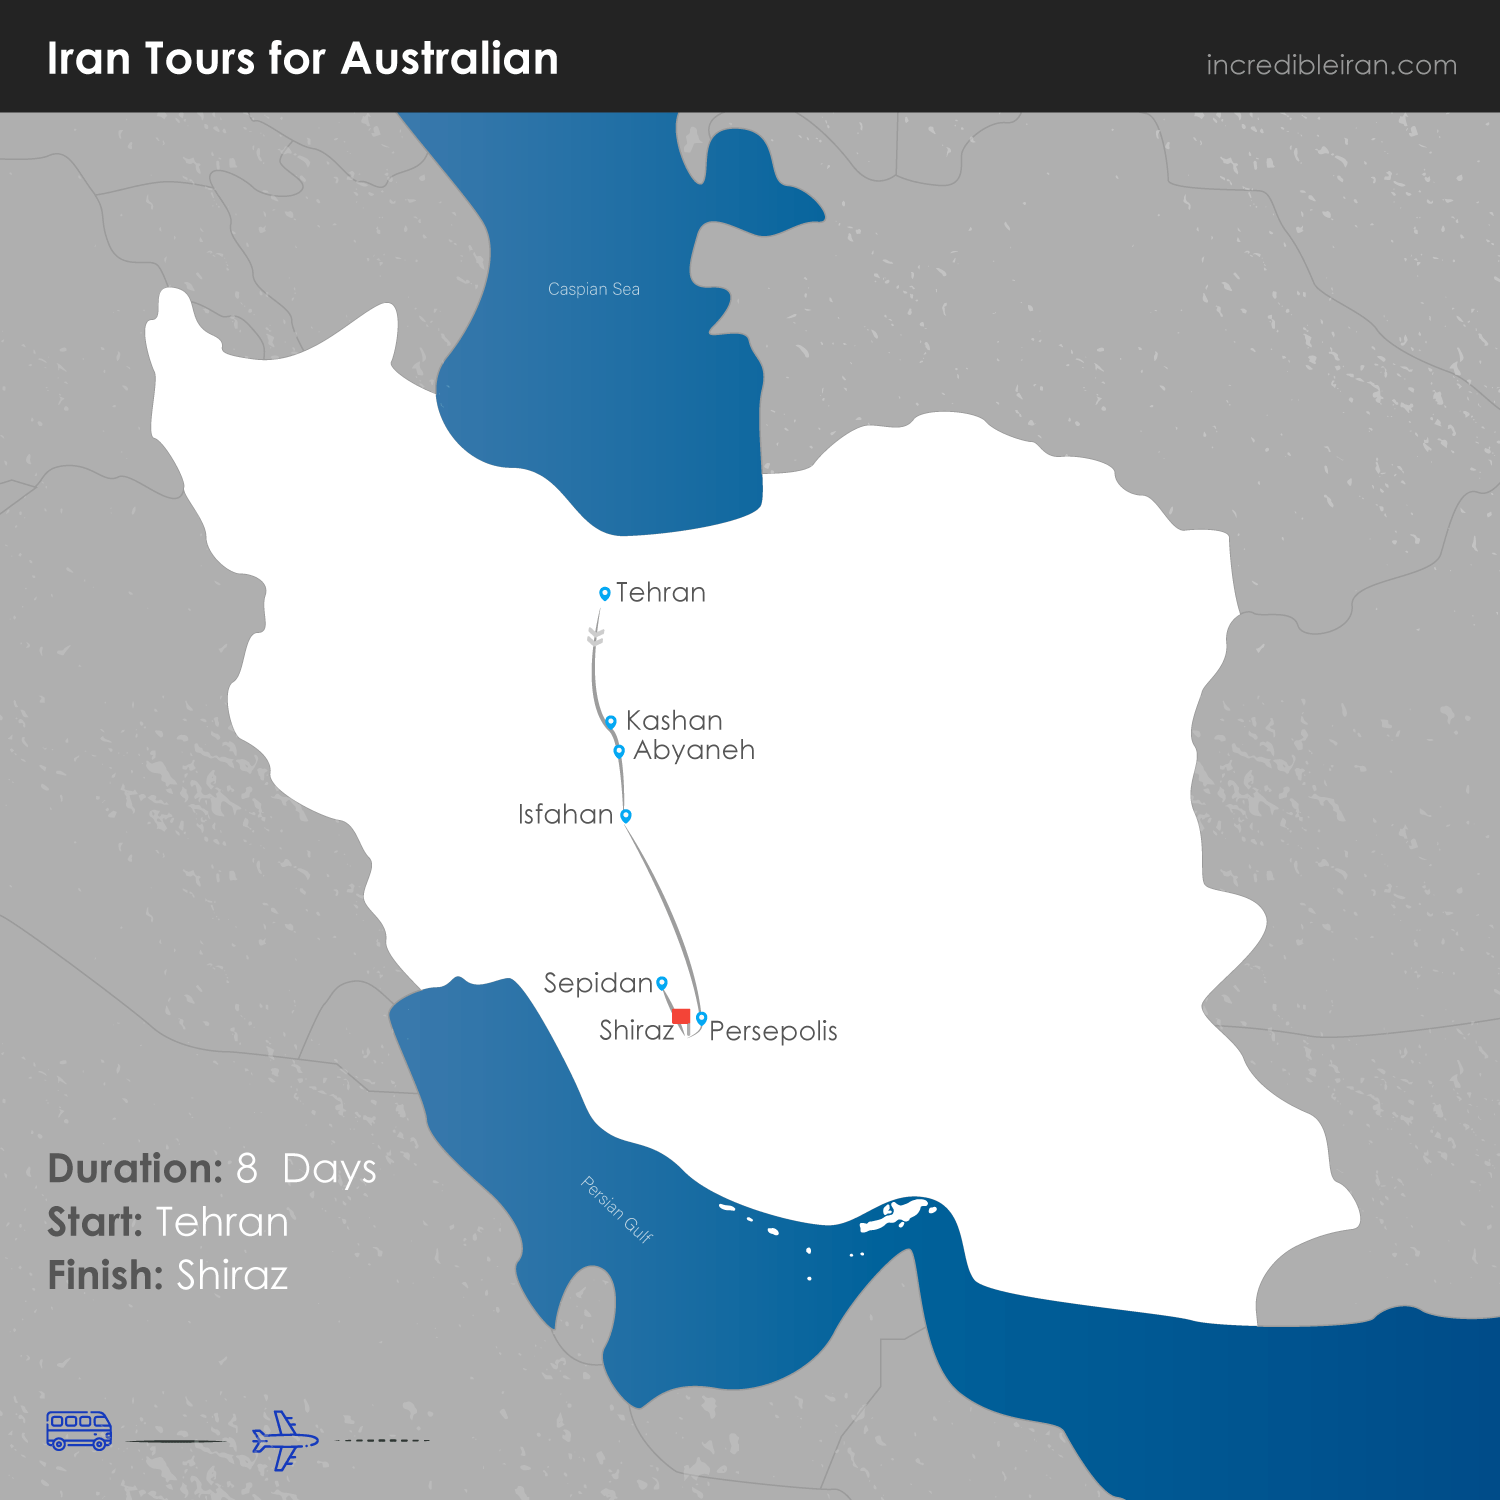 Iran Tours for Australian